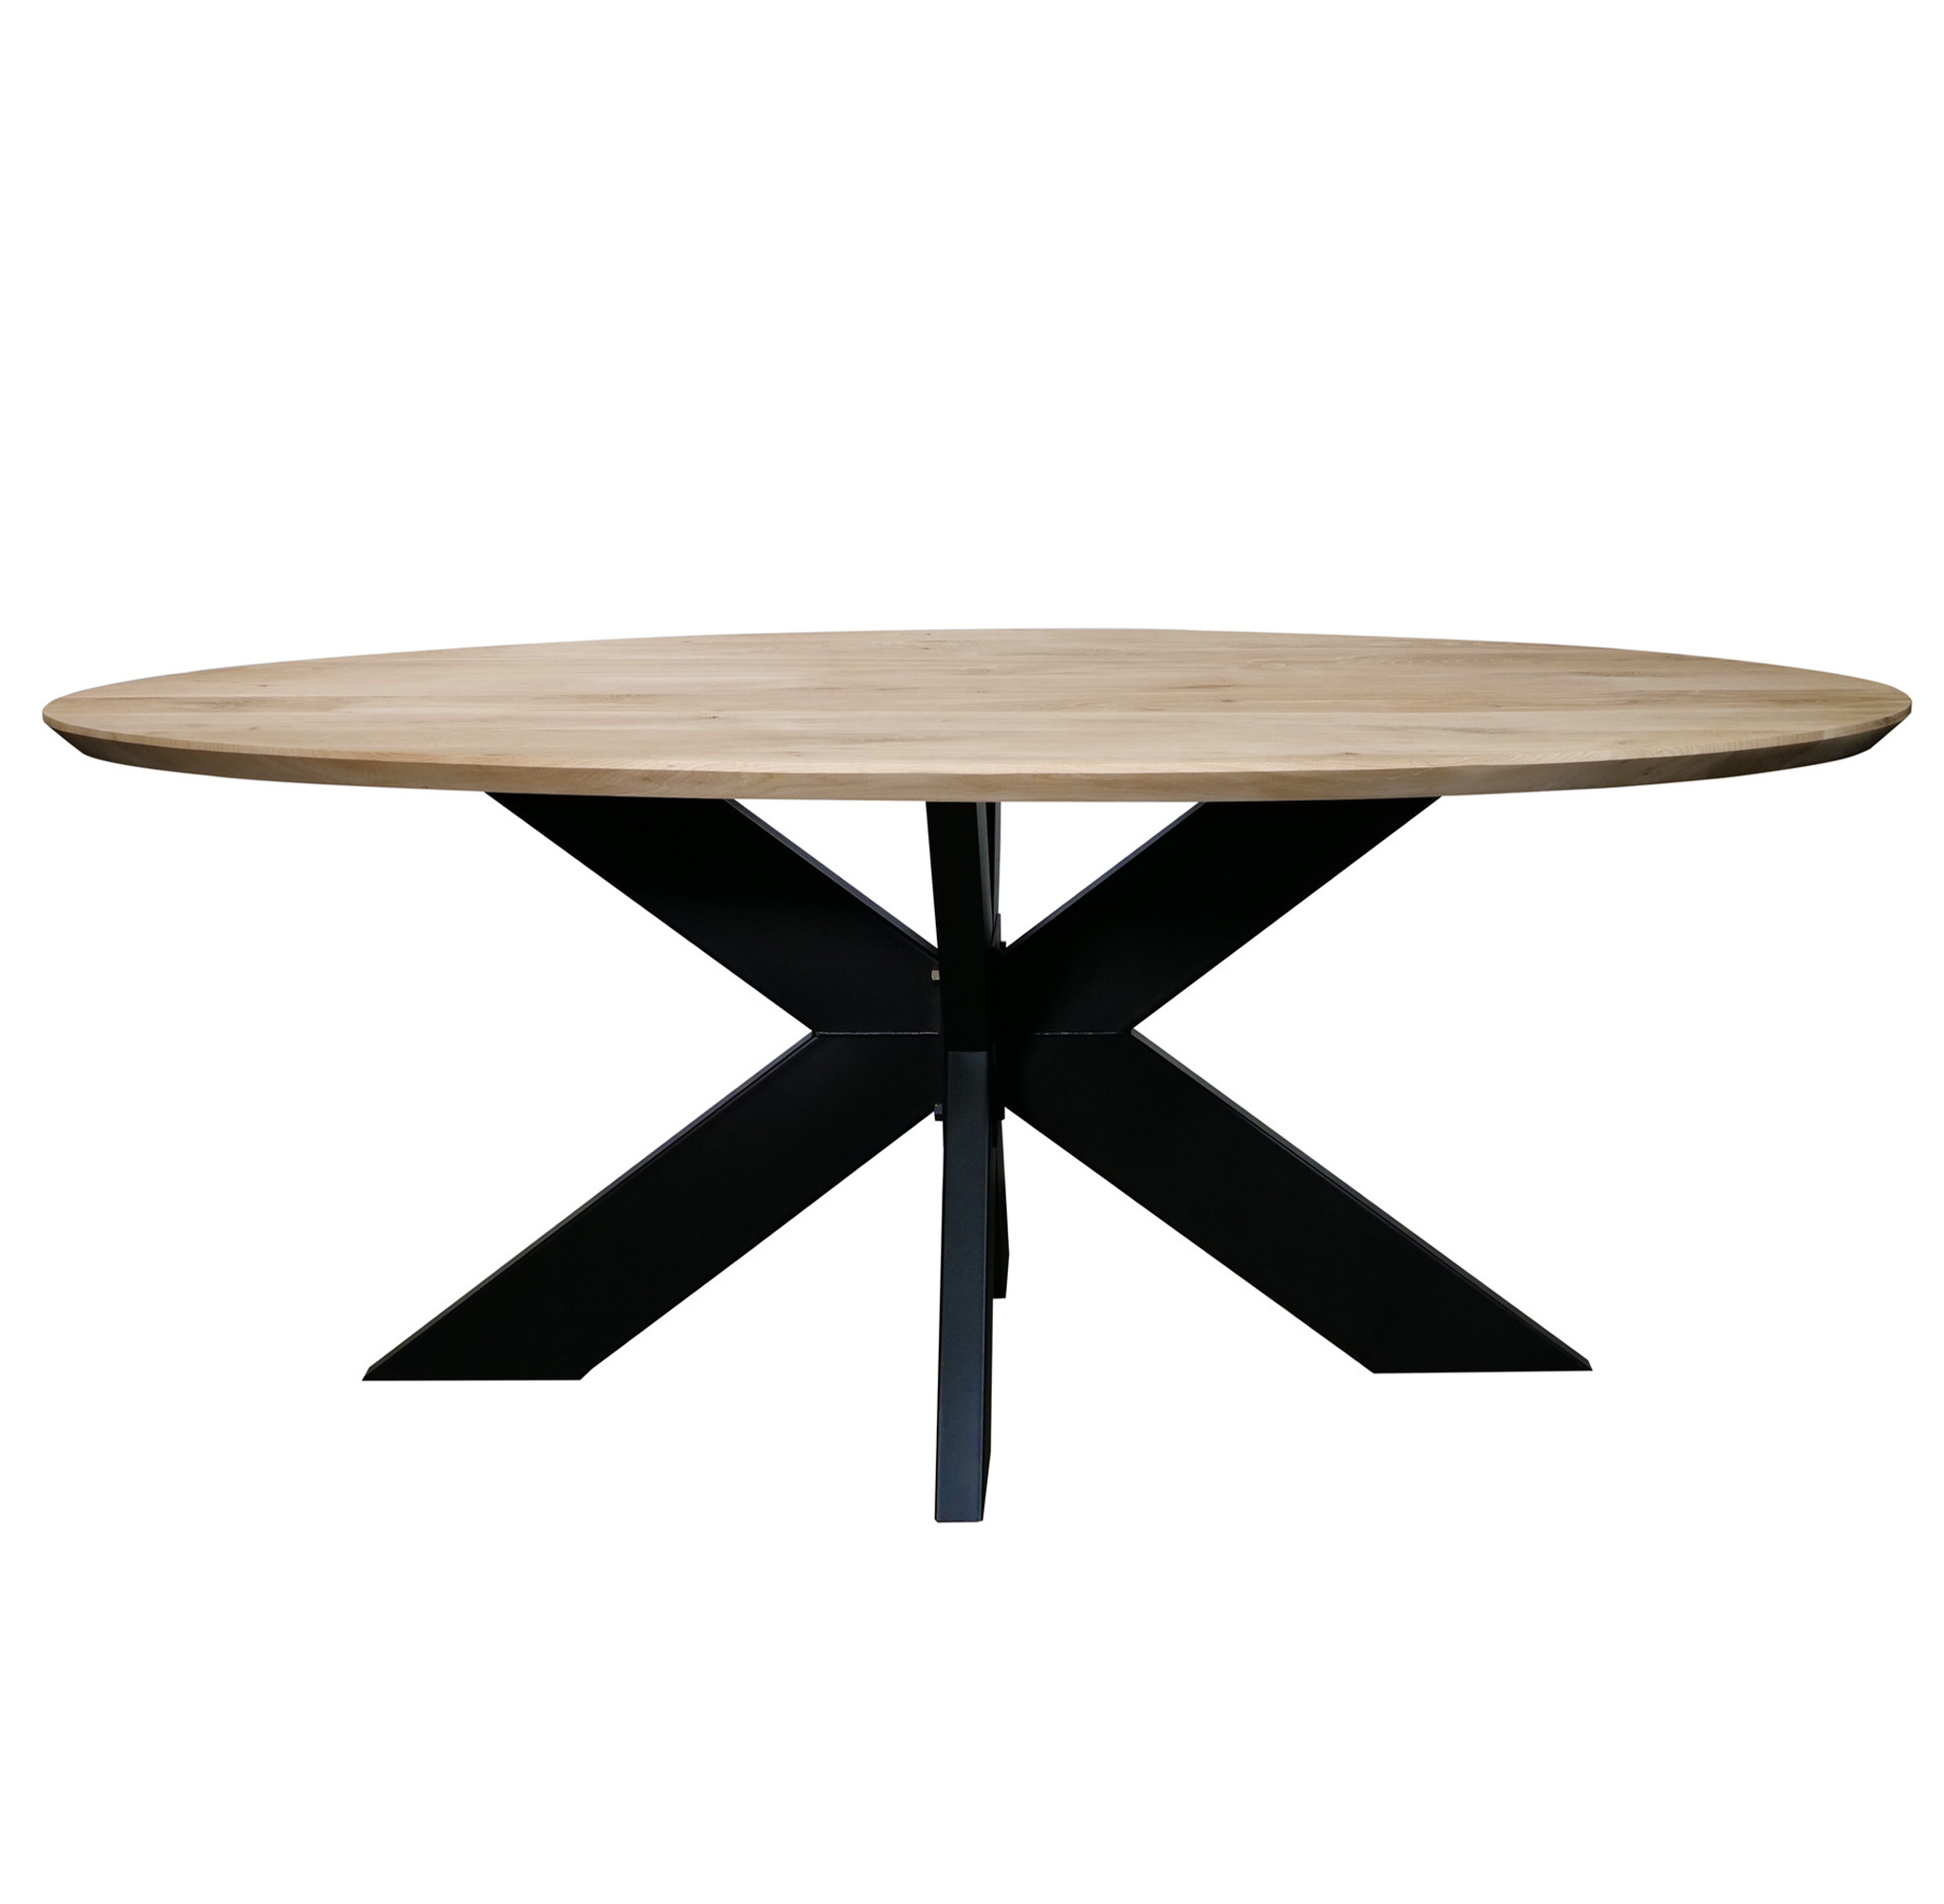  Tischplatte Wildeiche oval - 3 cm dick - mit Schweizer Kante - Asteiche (rustikal) - mit abgeschrägten Kanten - Eiche Tischplatte ellipse massiv - Verleimt & künstlich getrocknet (HF 8-12%)